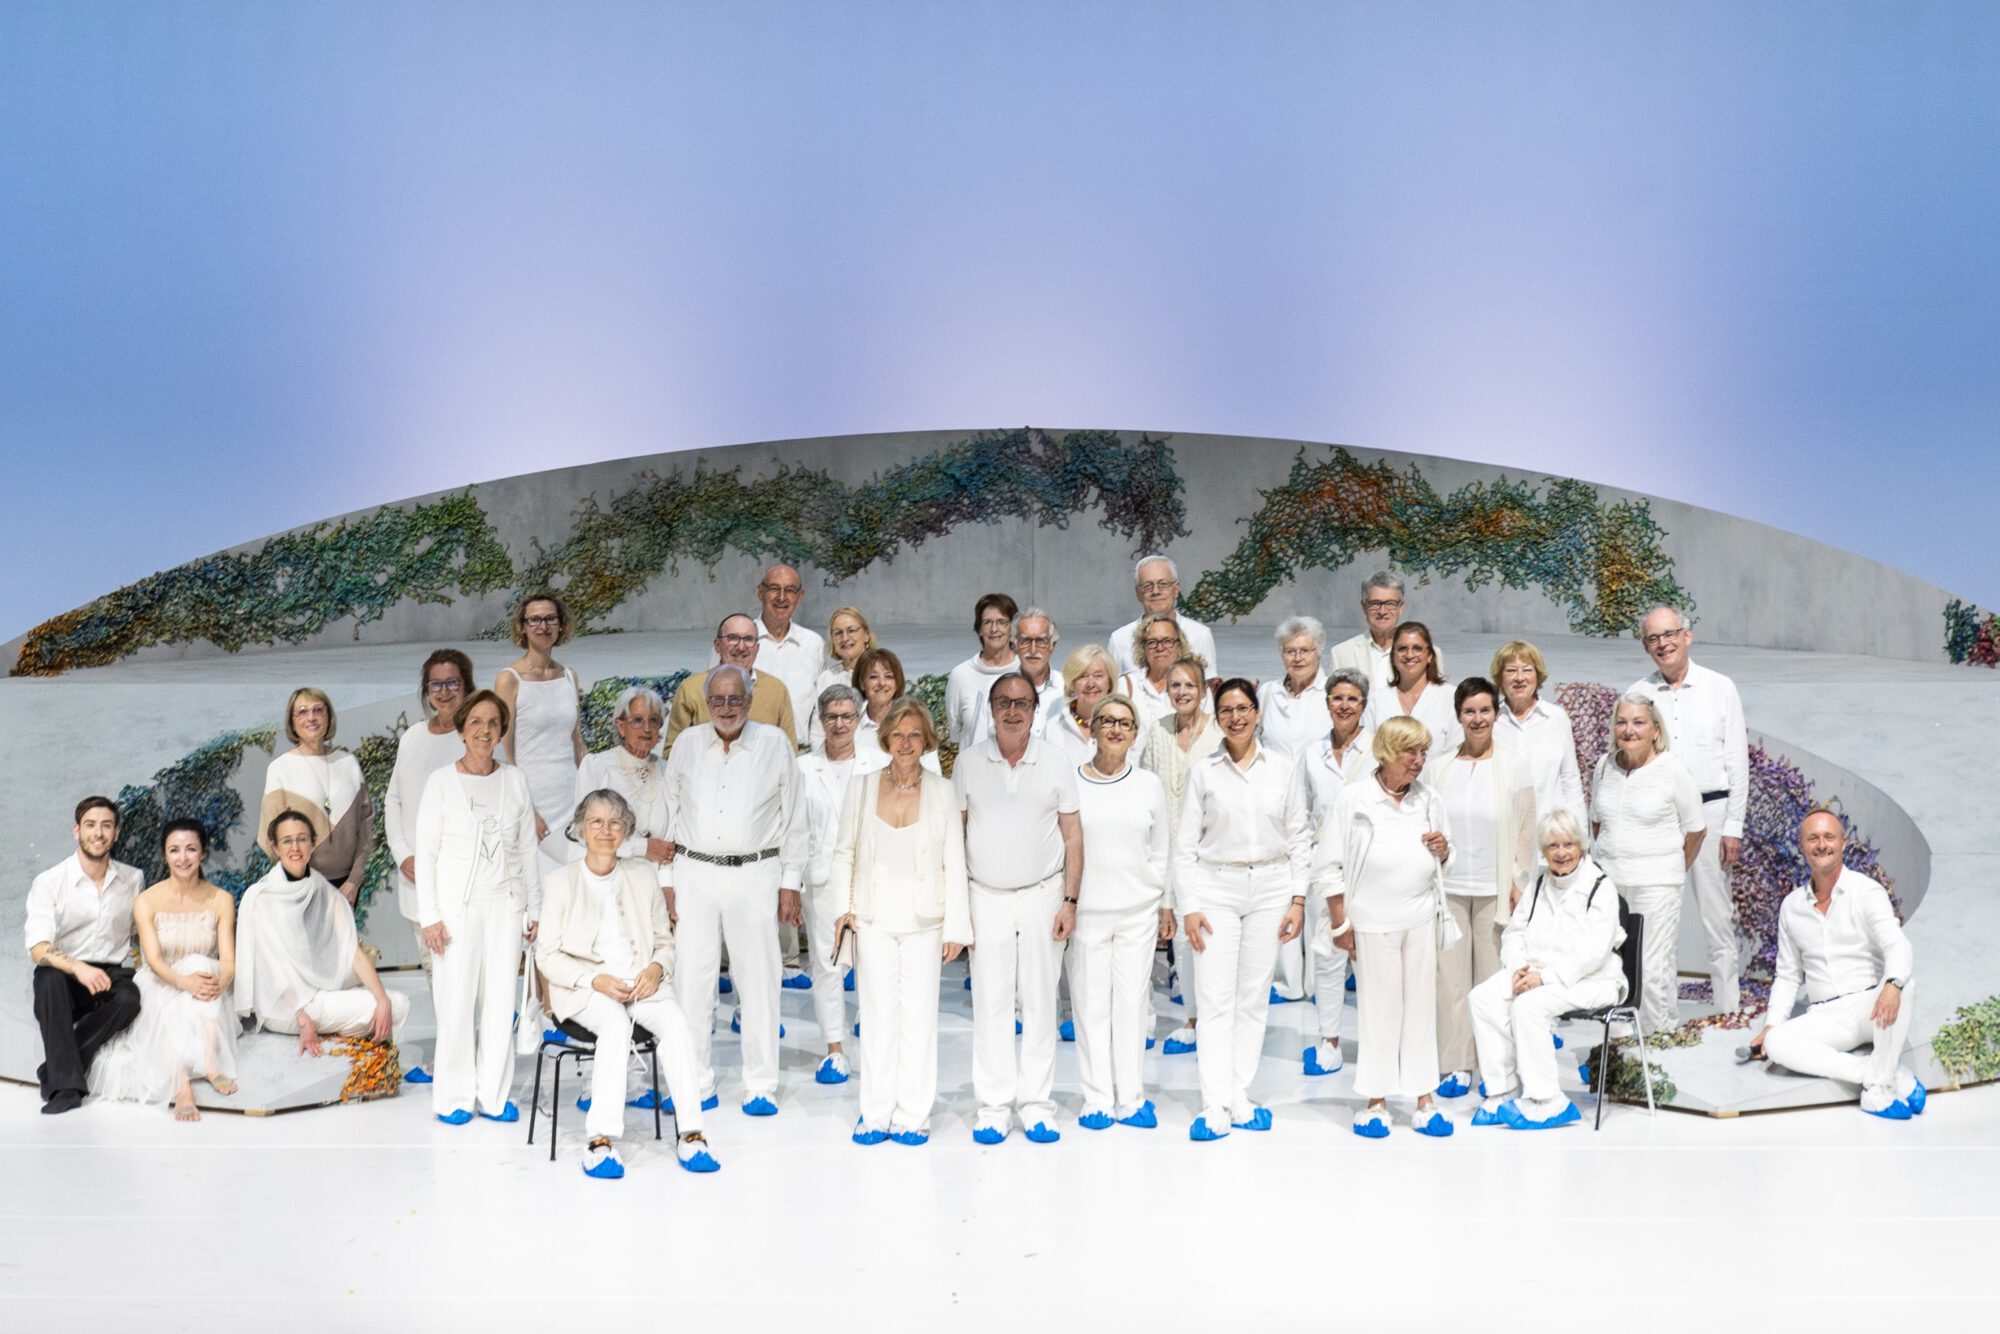 Die Theaterfreunde ganz in Weiß bei der Einweihung der weißen Gassenaushängung auf der Bühne des Großen Hauses